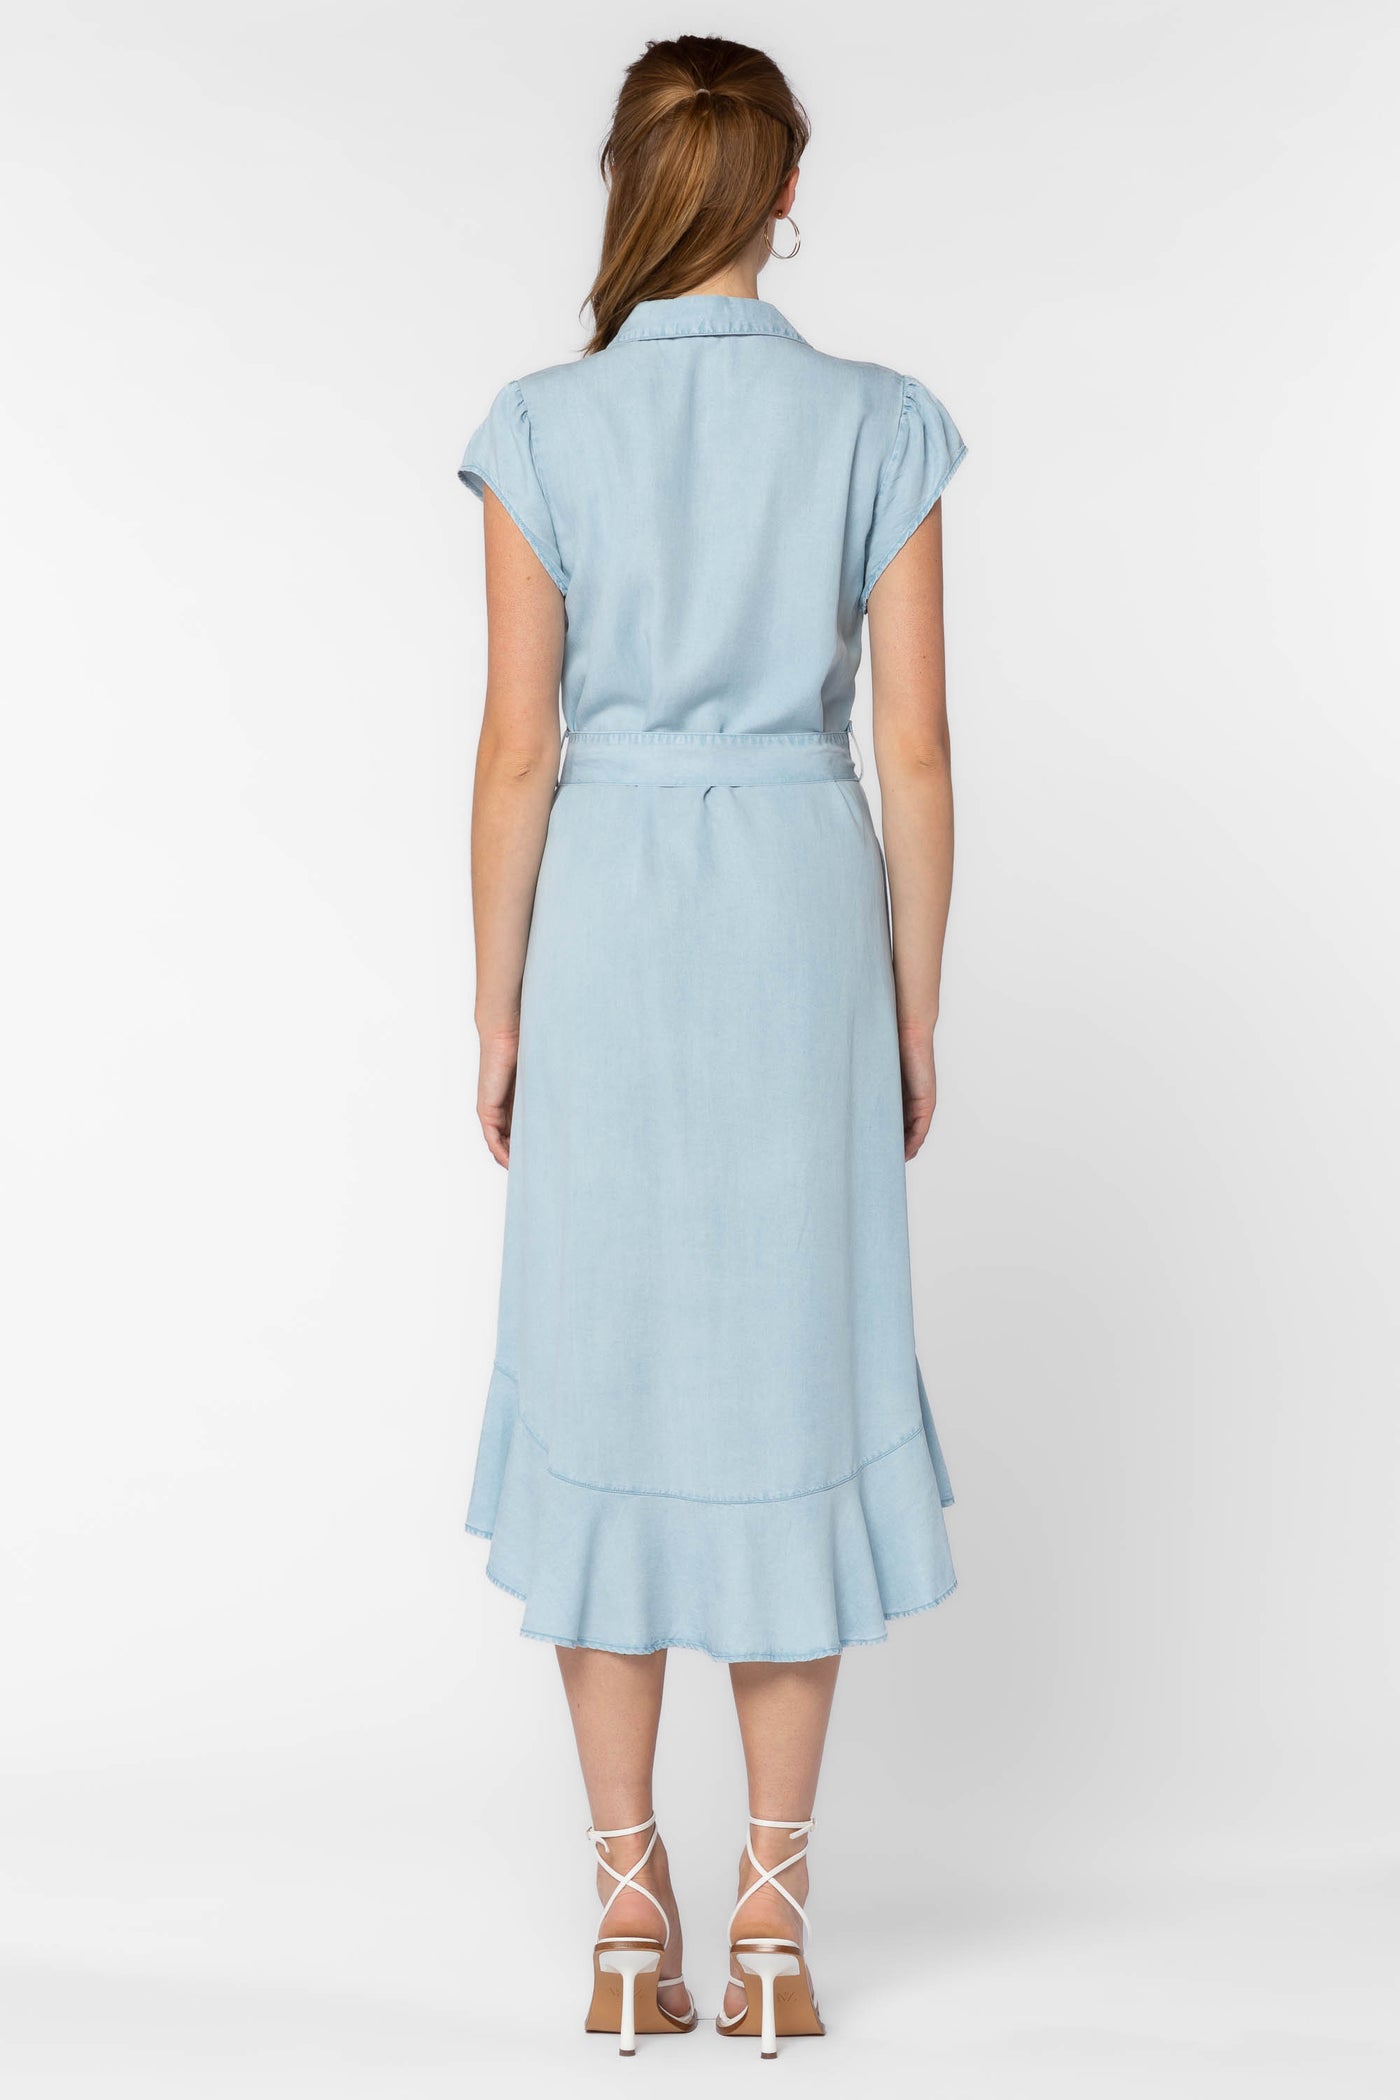 Rachel Blue Dress - Dresses - Velvet Heart Clothing